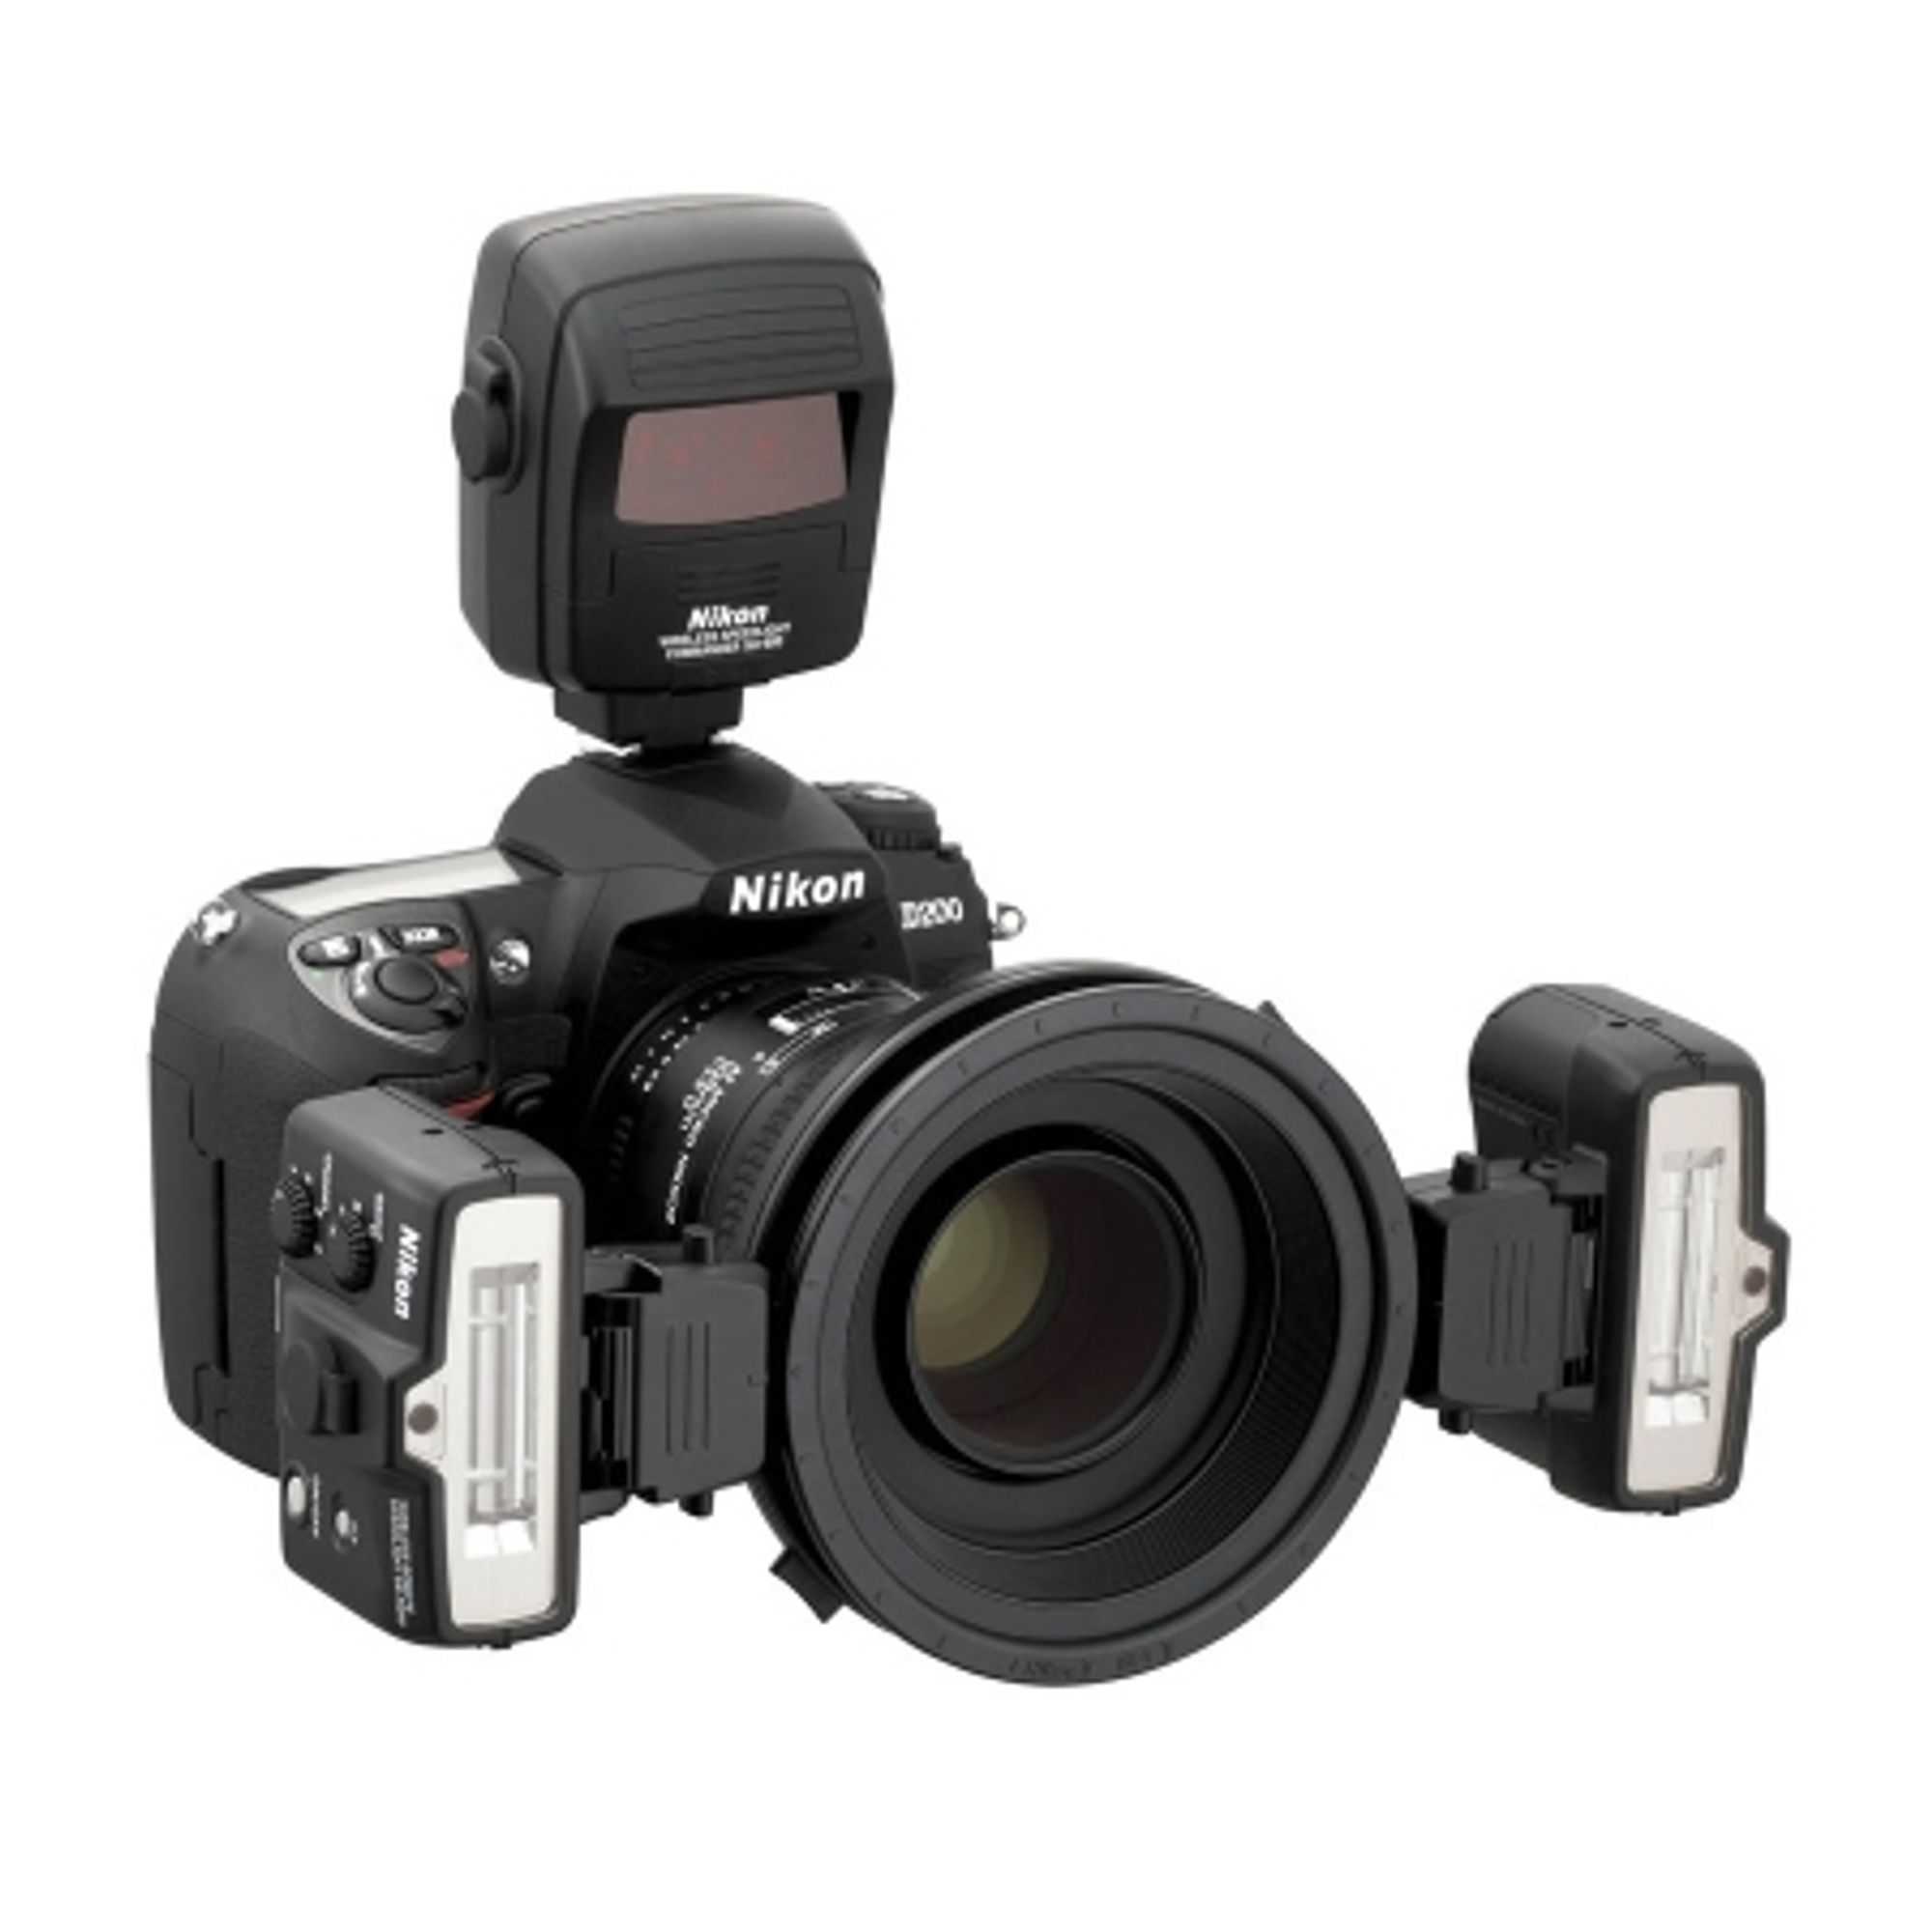 Nikon speedlight commander kit r1c1 купить - санкт-петербург по акционной цене , отзывы и обзоры.